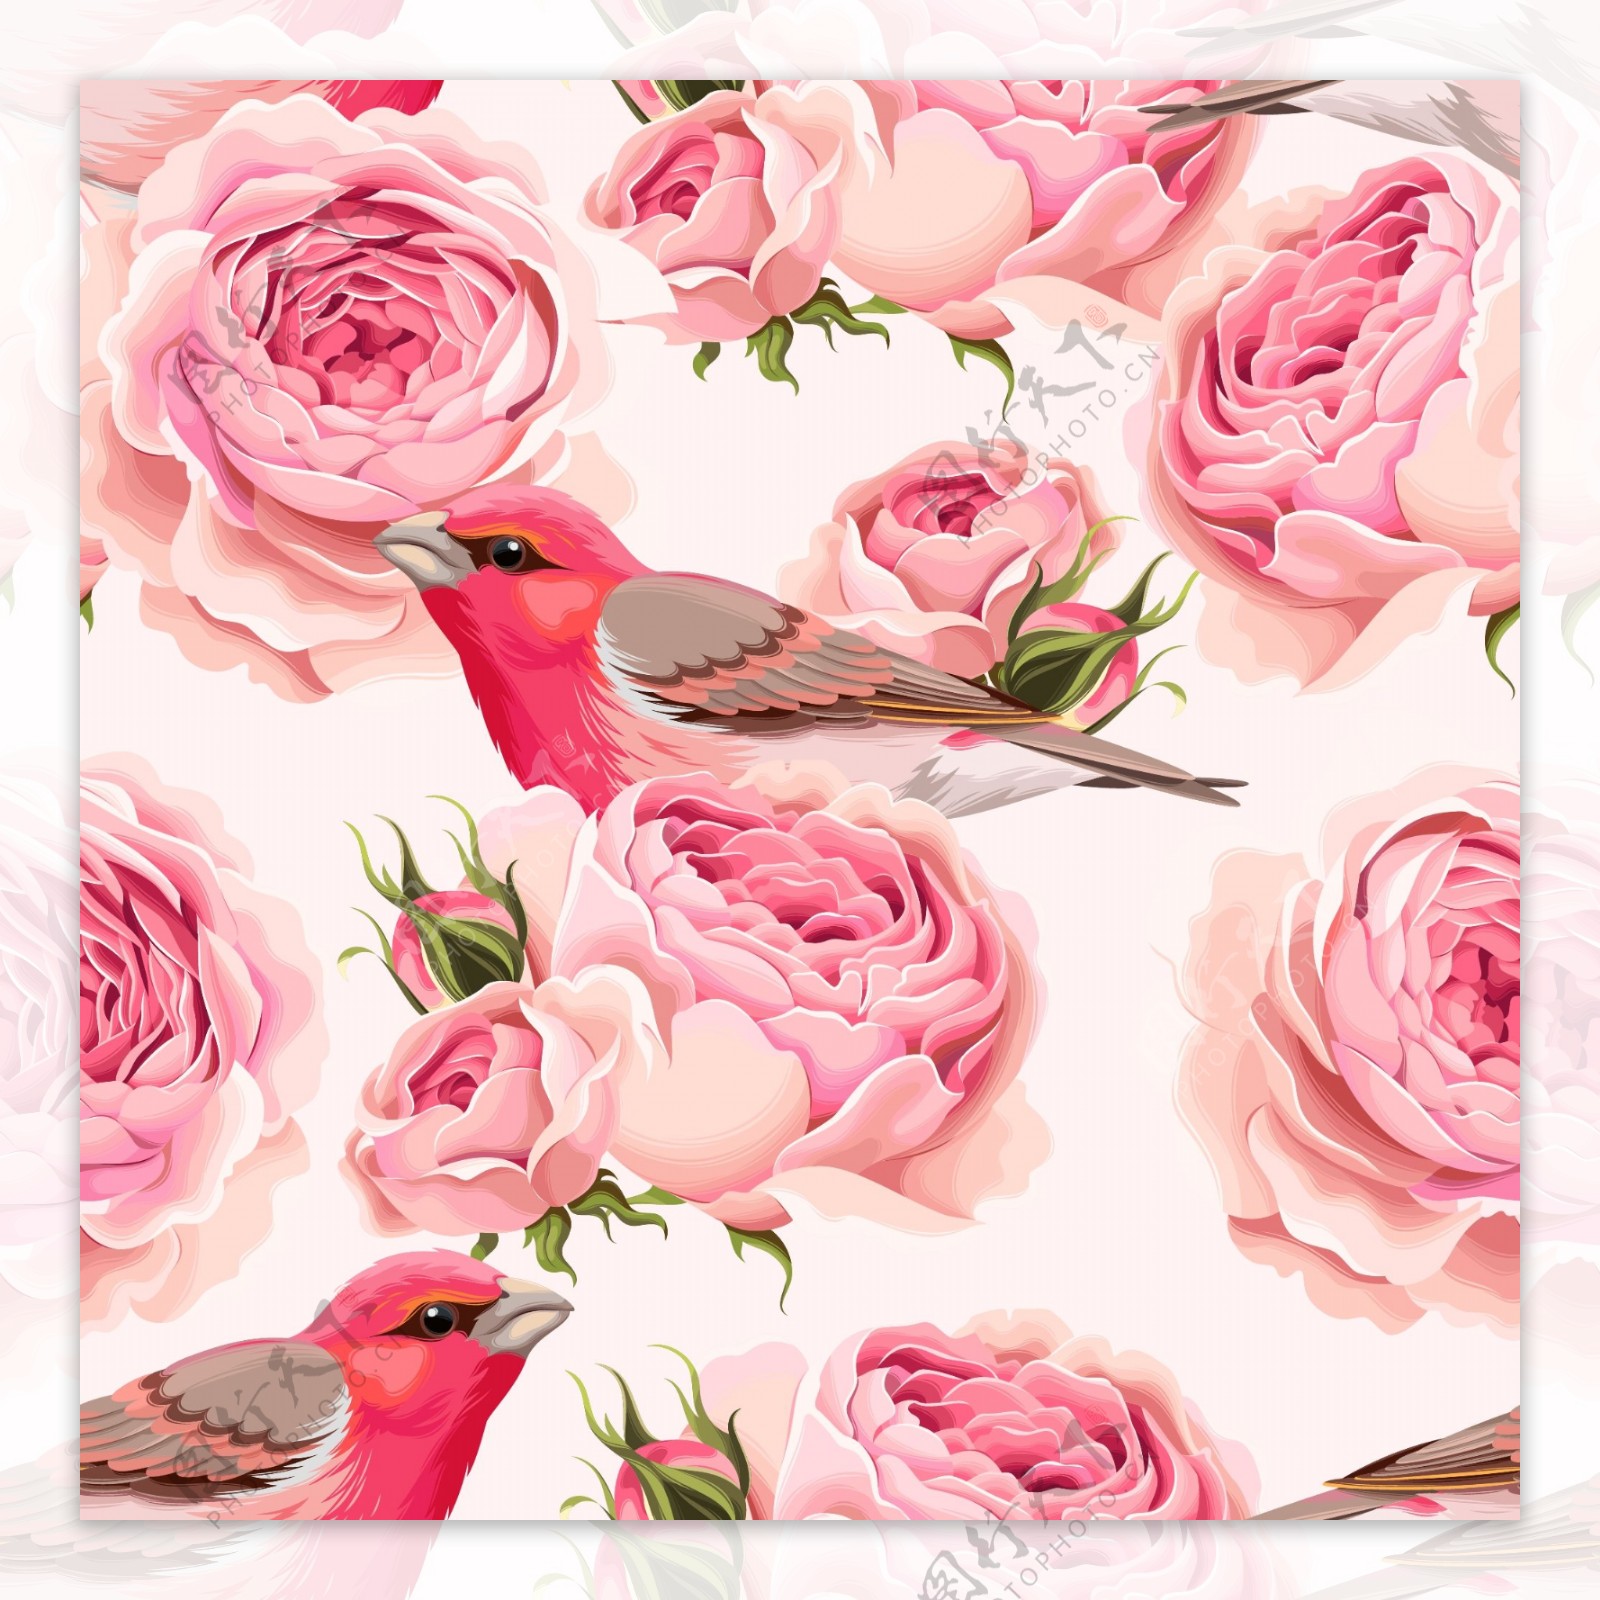 粉色玫瑰和小鸟背景